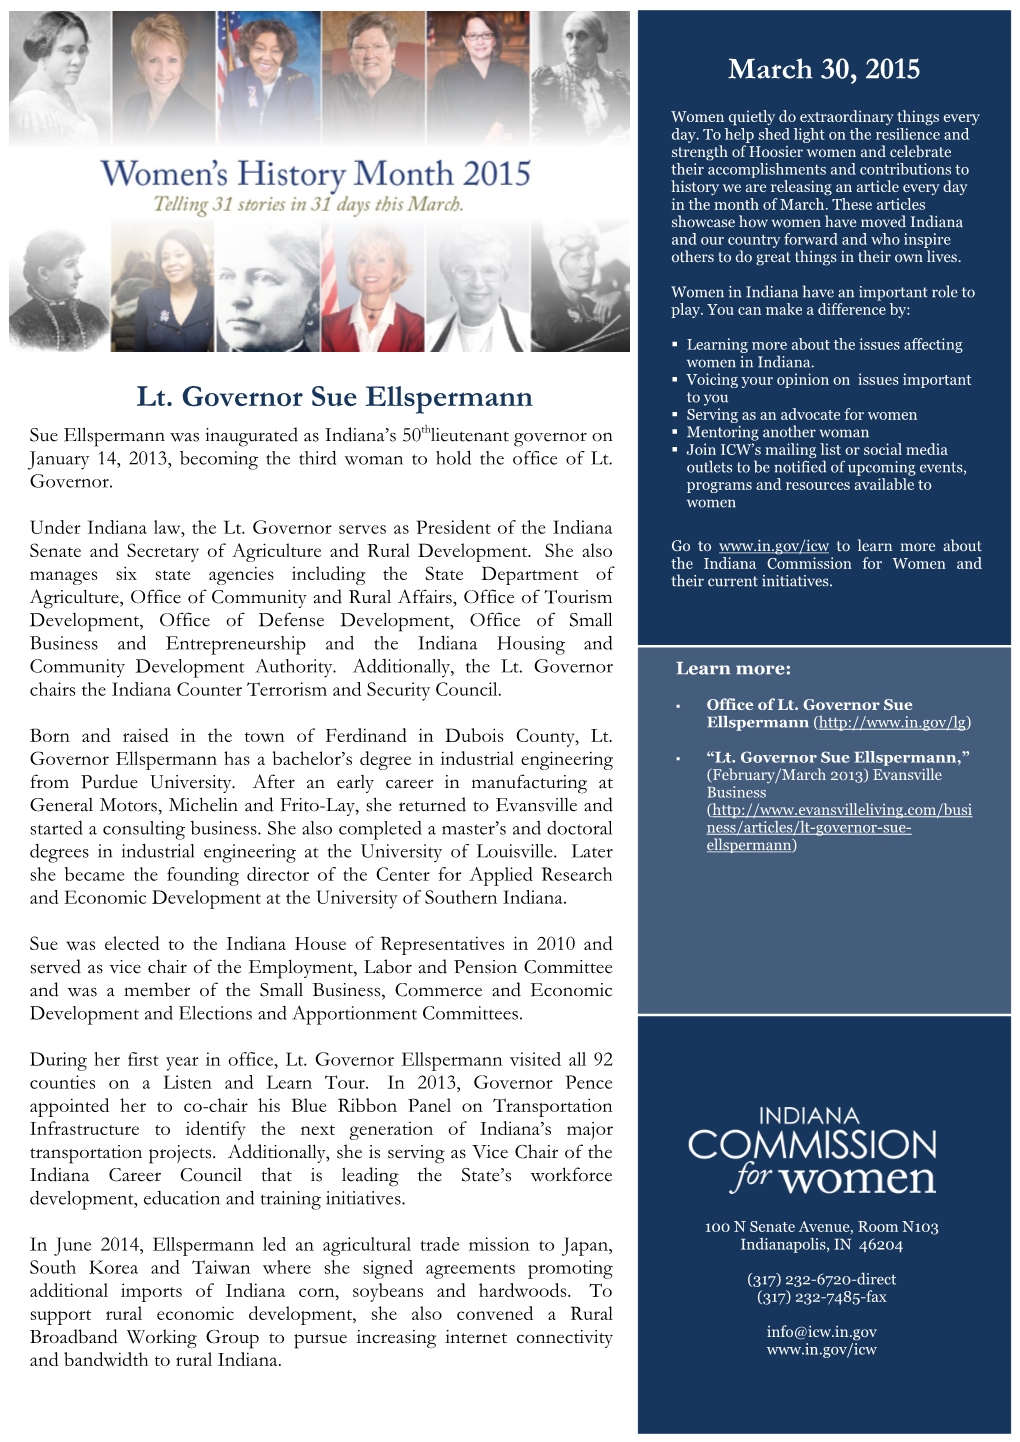 Lt. Governor Sue Ellspermann March 30, 2015